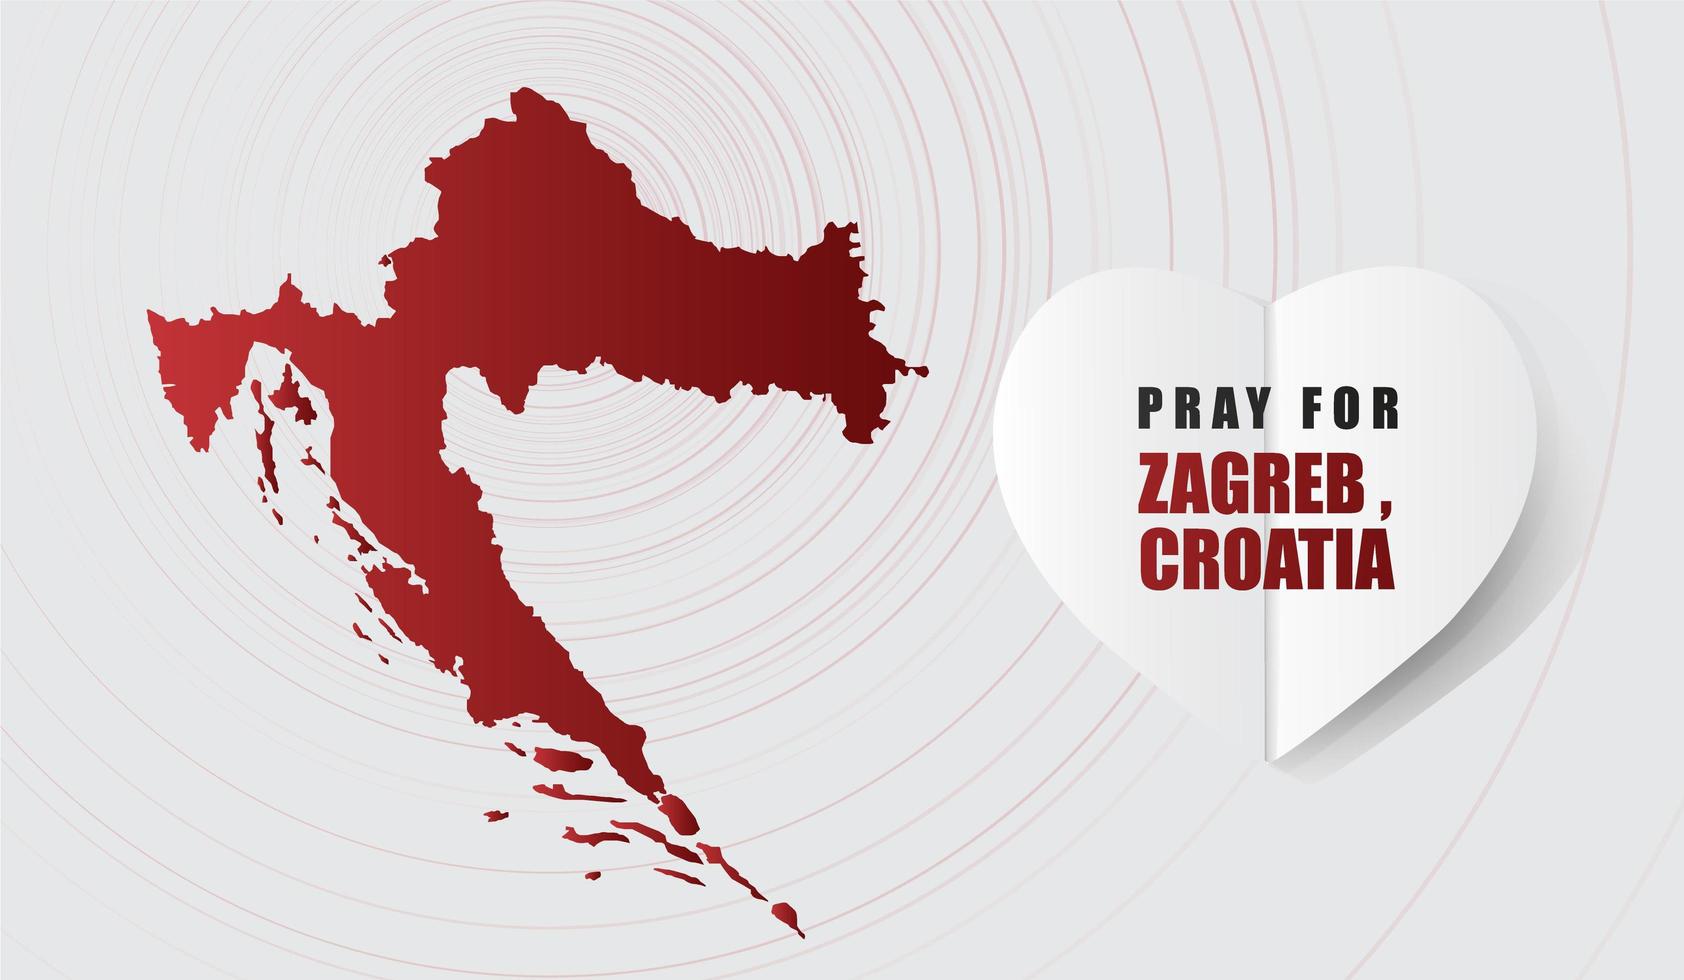 be för zagreb kroatien meddelande med karta på grå bakgrund design för stöd och hjälp till människor välgörenhet donera efter jordbävning och virus attack vektorillustration vektor